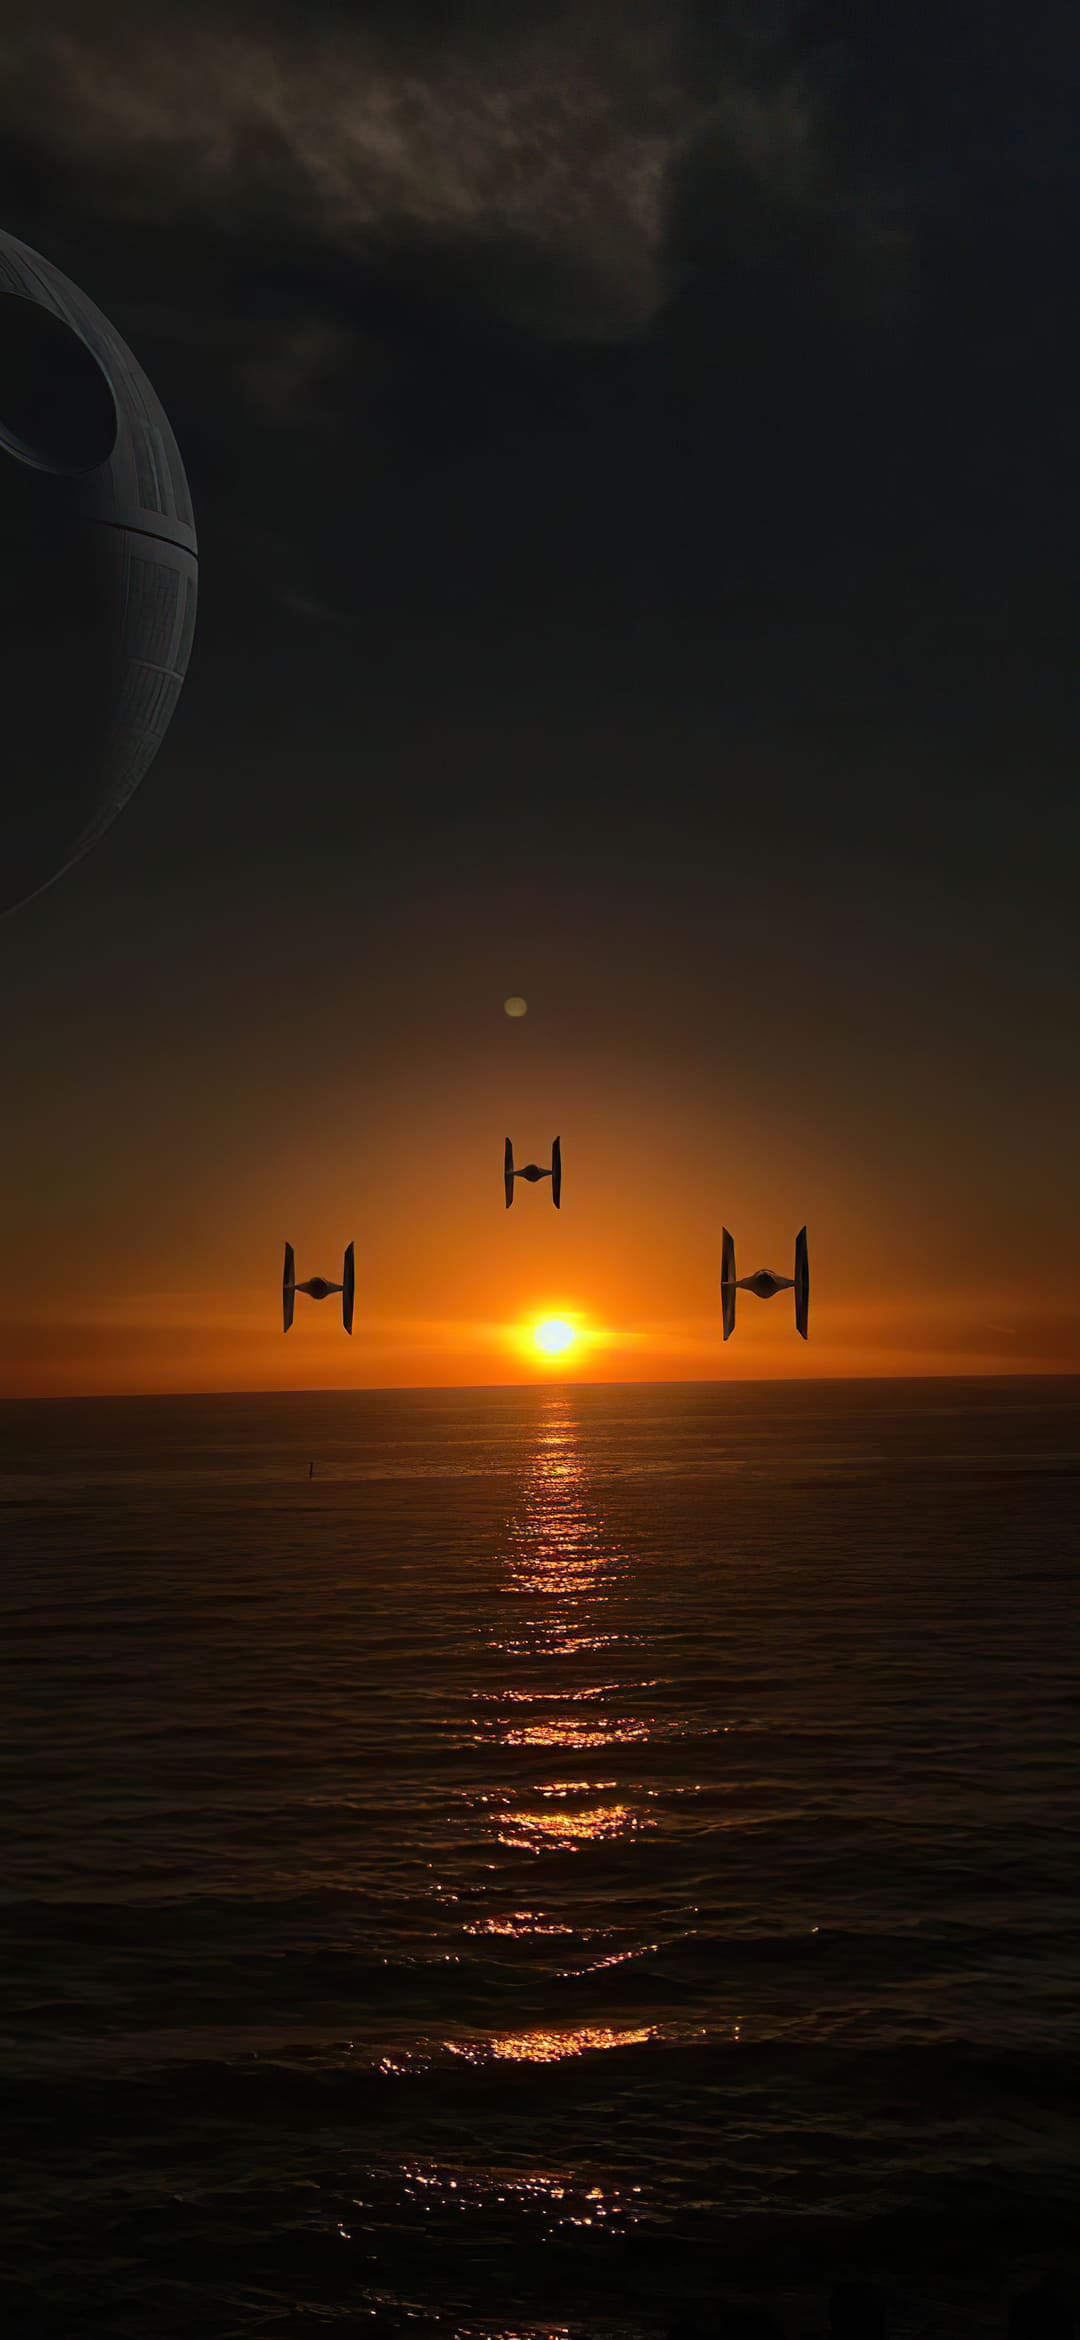  Star Wars Hintergrundbild 1080x2340. Star Wars HD Wallpaper Best Ultra HD Star Wars Background